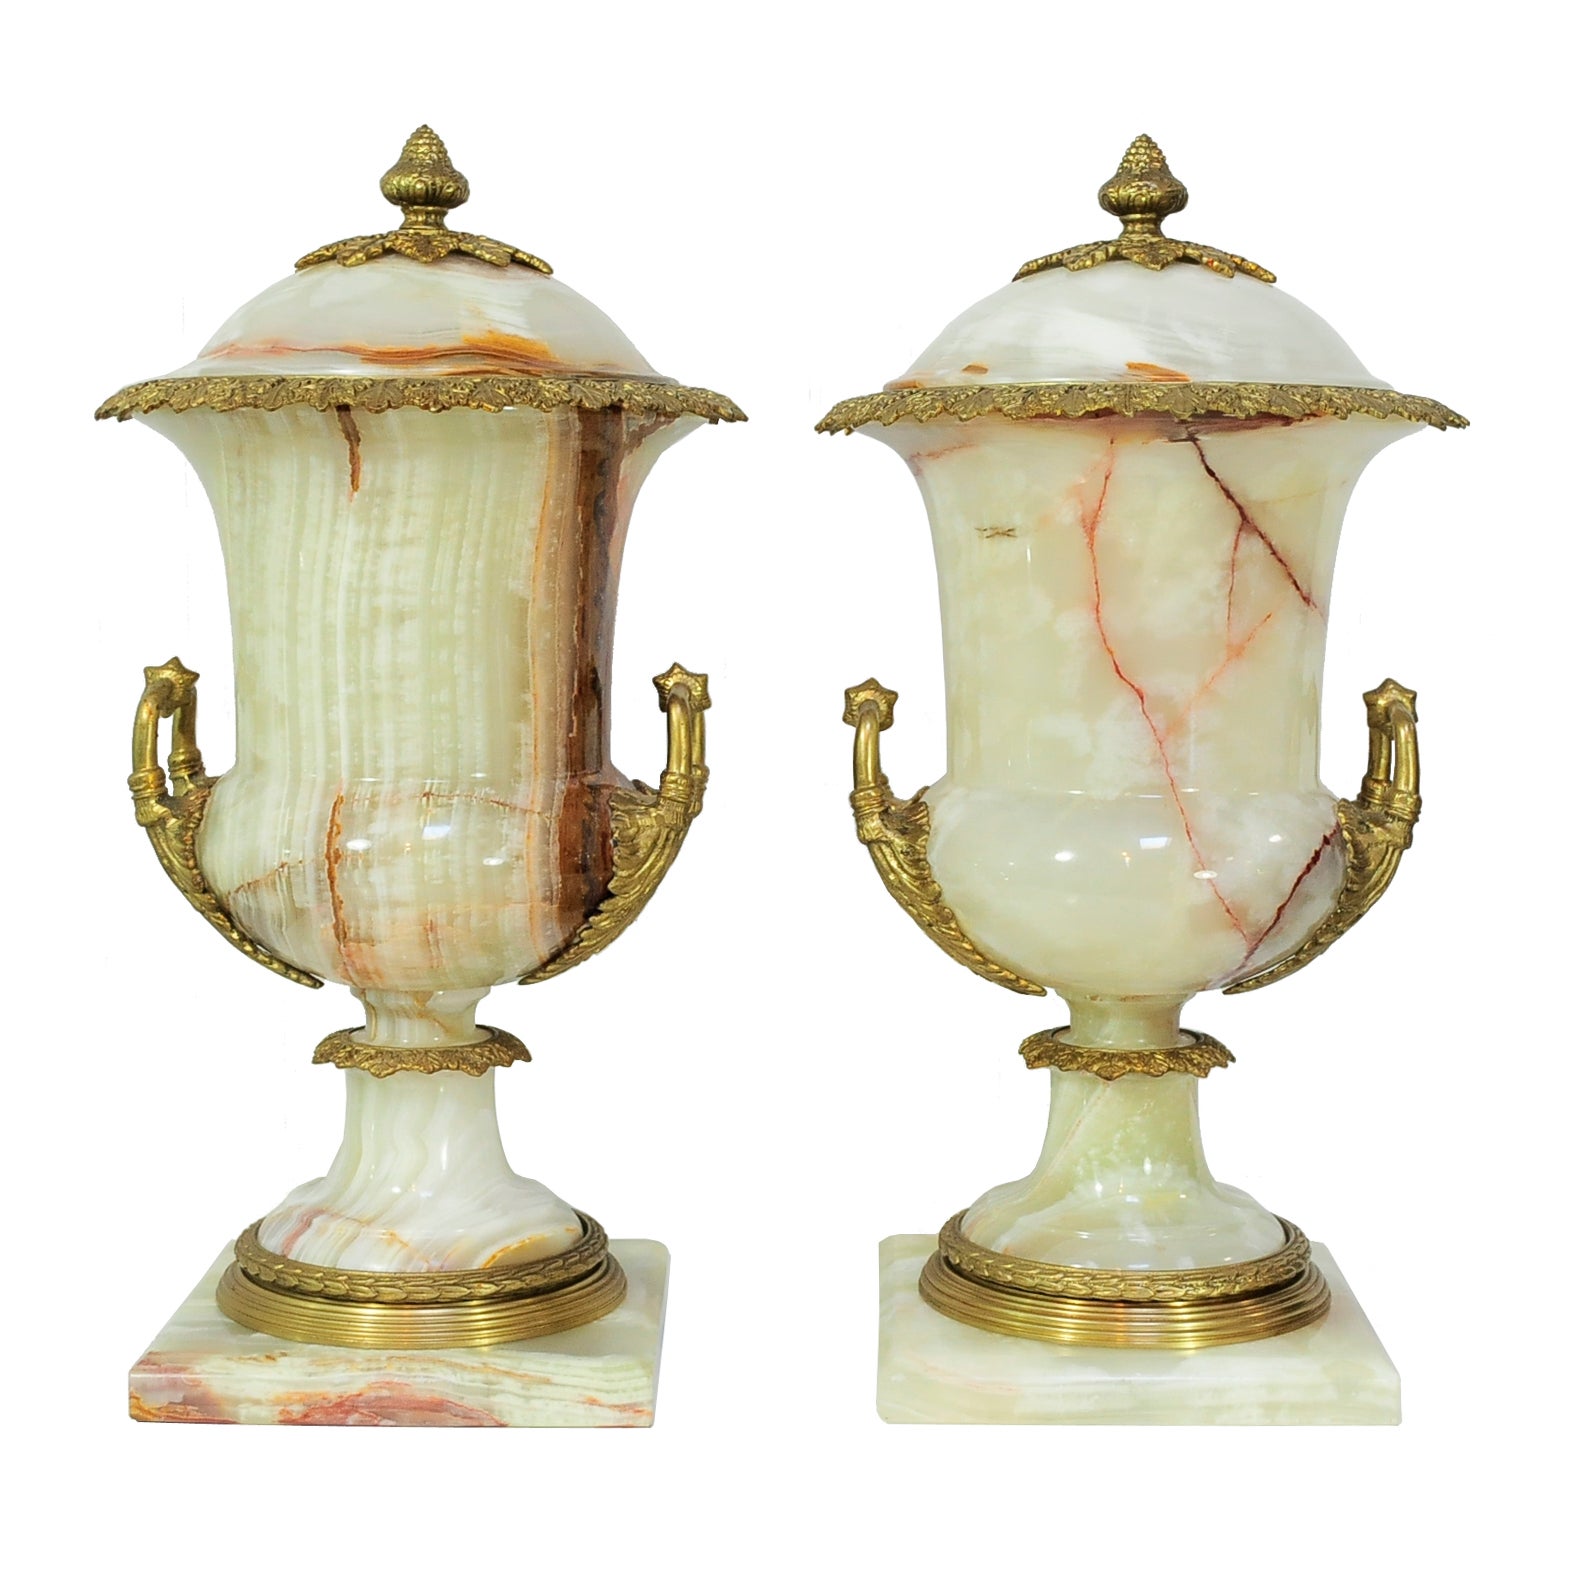 Paire d'urnes à couvercle en bronze et onyx de style Empire français Louis XVI